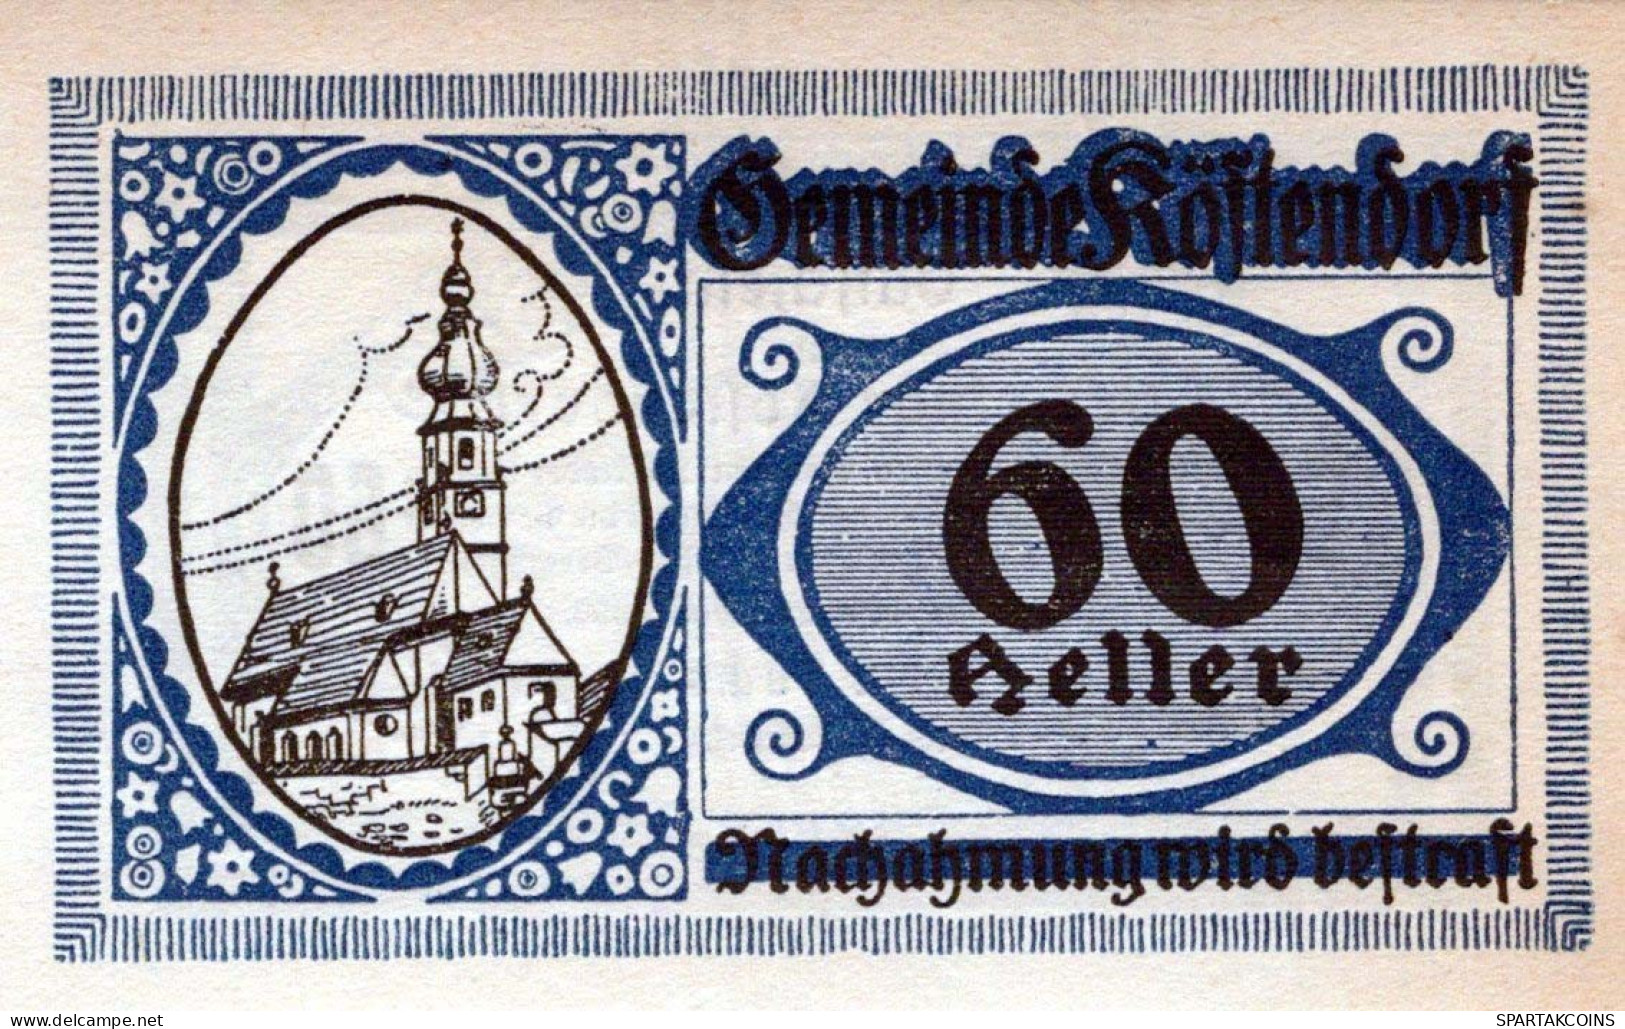 60 HELLER 1920 Stadt KoSTENDORF Salzburg Österreich Notgeld Banknote #PD644 - [11] Emisiones Locales